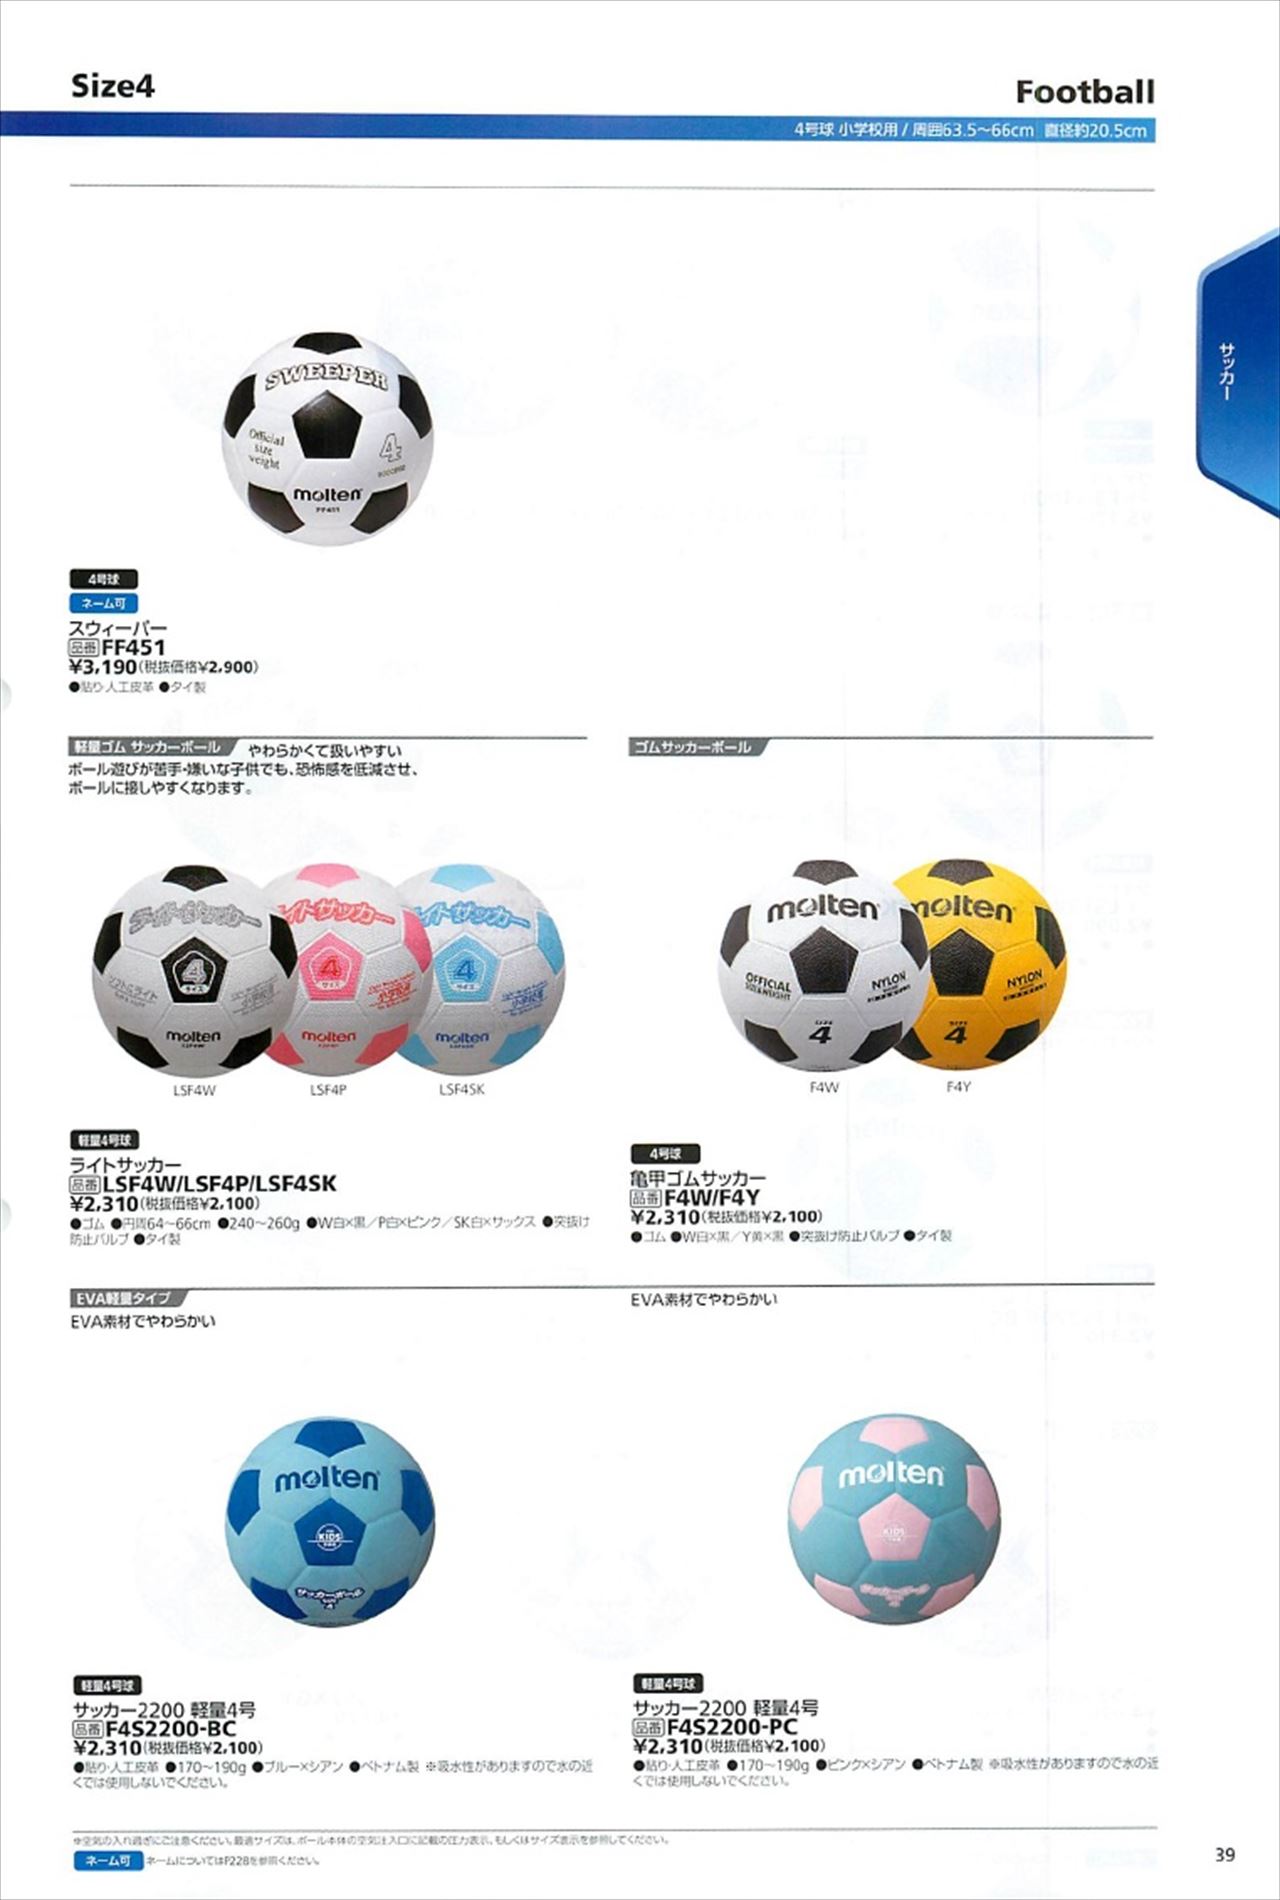 サッカーボール4号球 軽量4号球は モルテン21カタログ の ページ39 に掲載されています スポーツメーカーカタログ 目次ページ